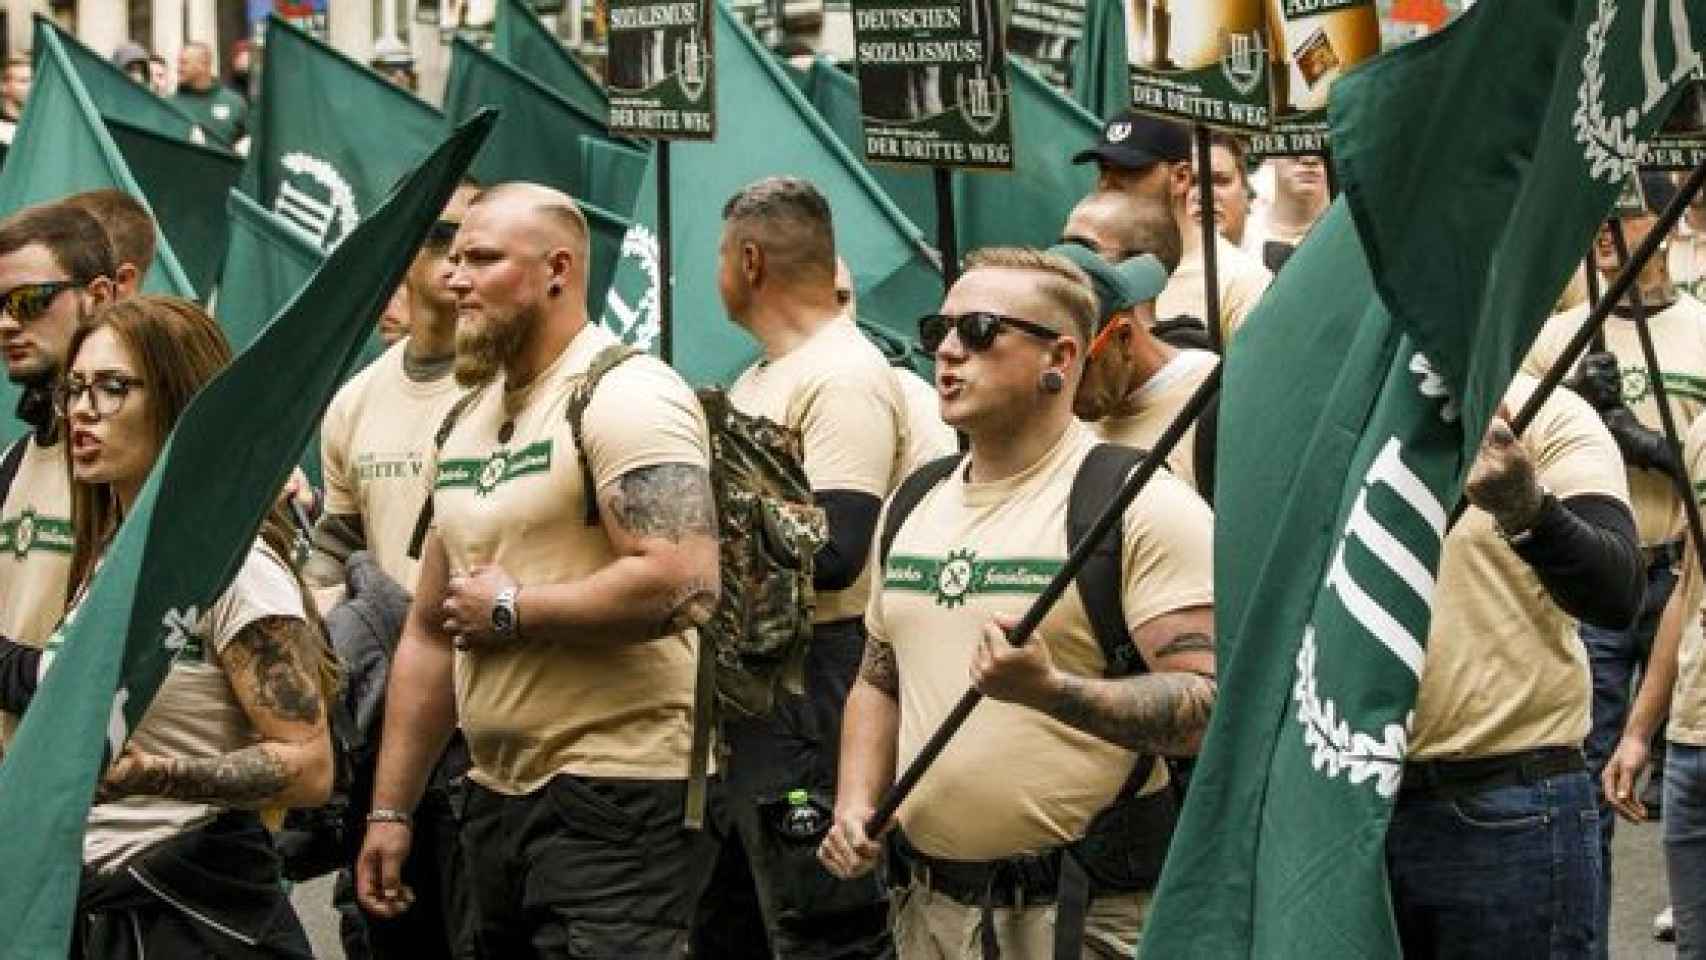 La 'terrorífica' marcha de 300 neonazis en Alemania